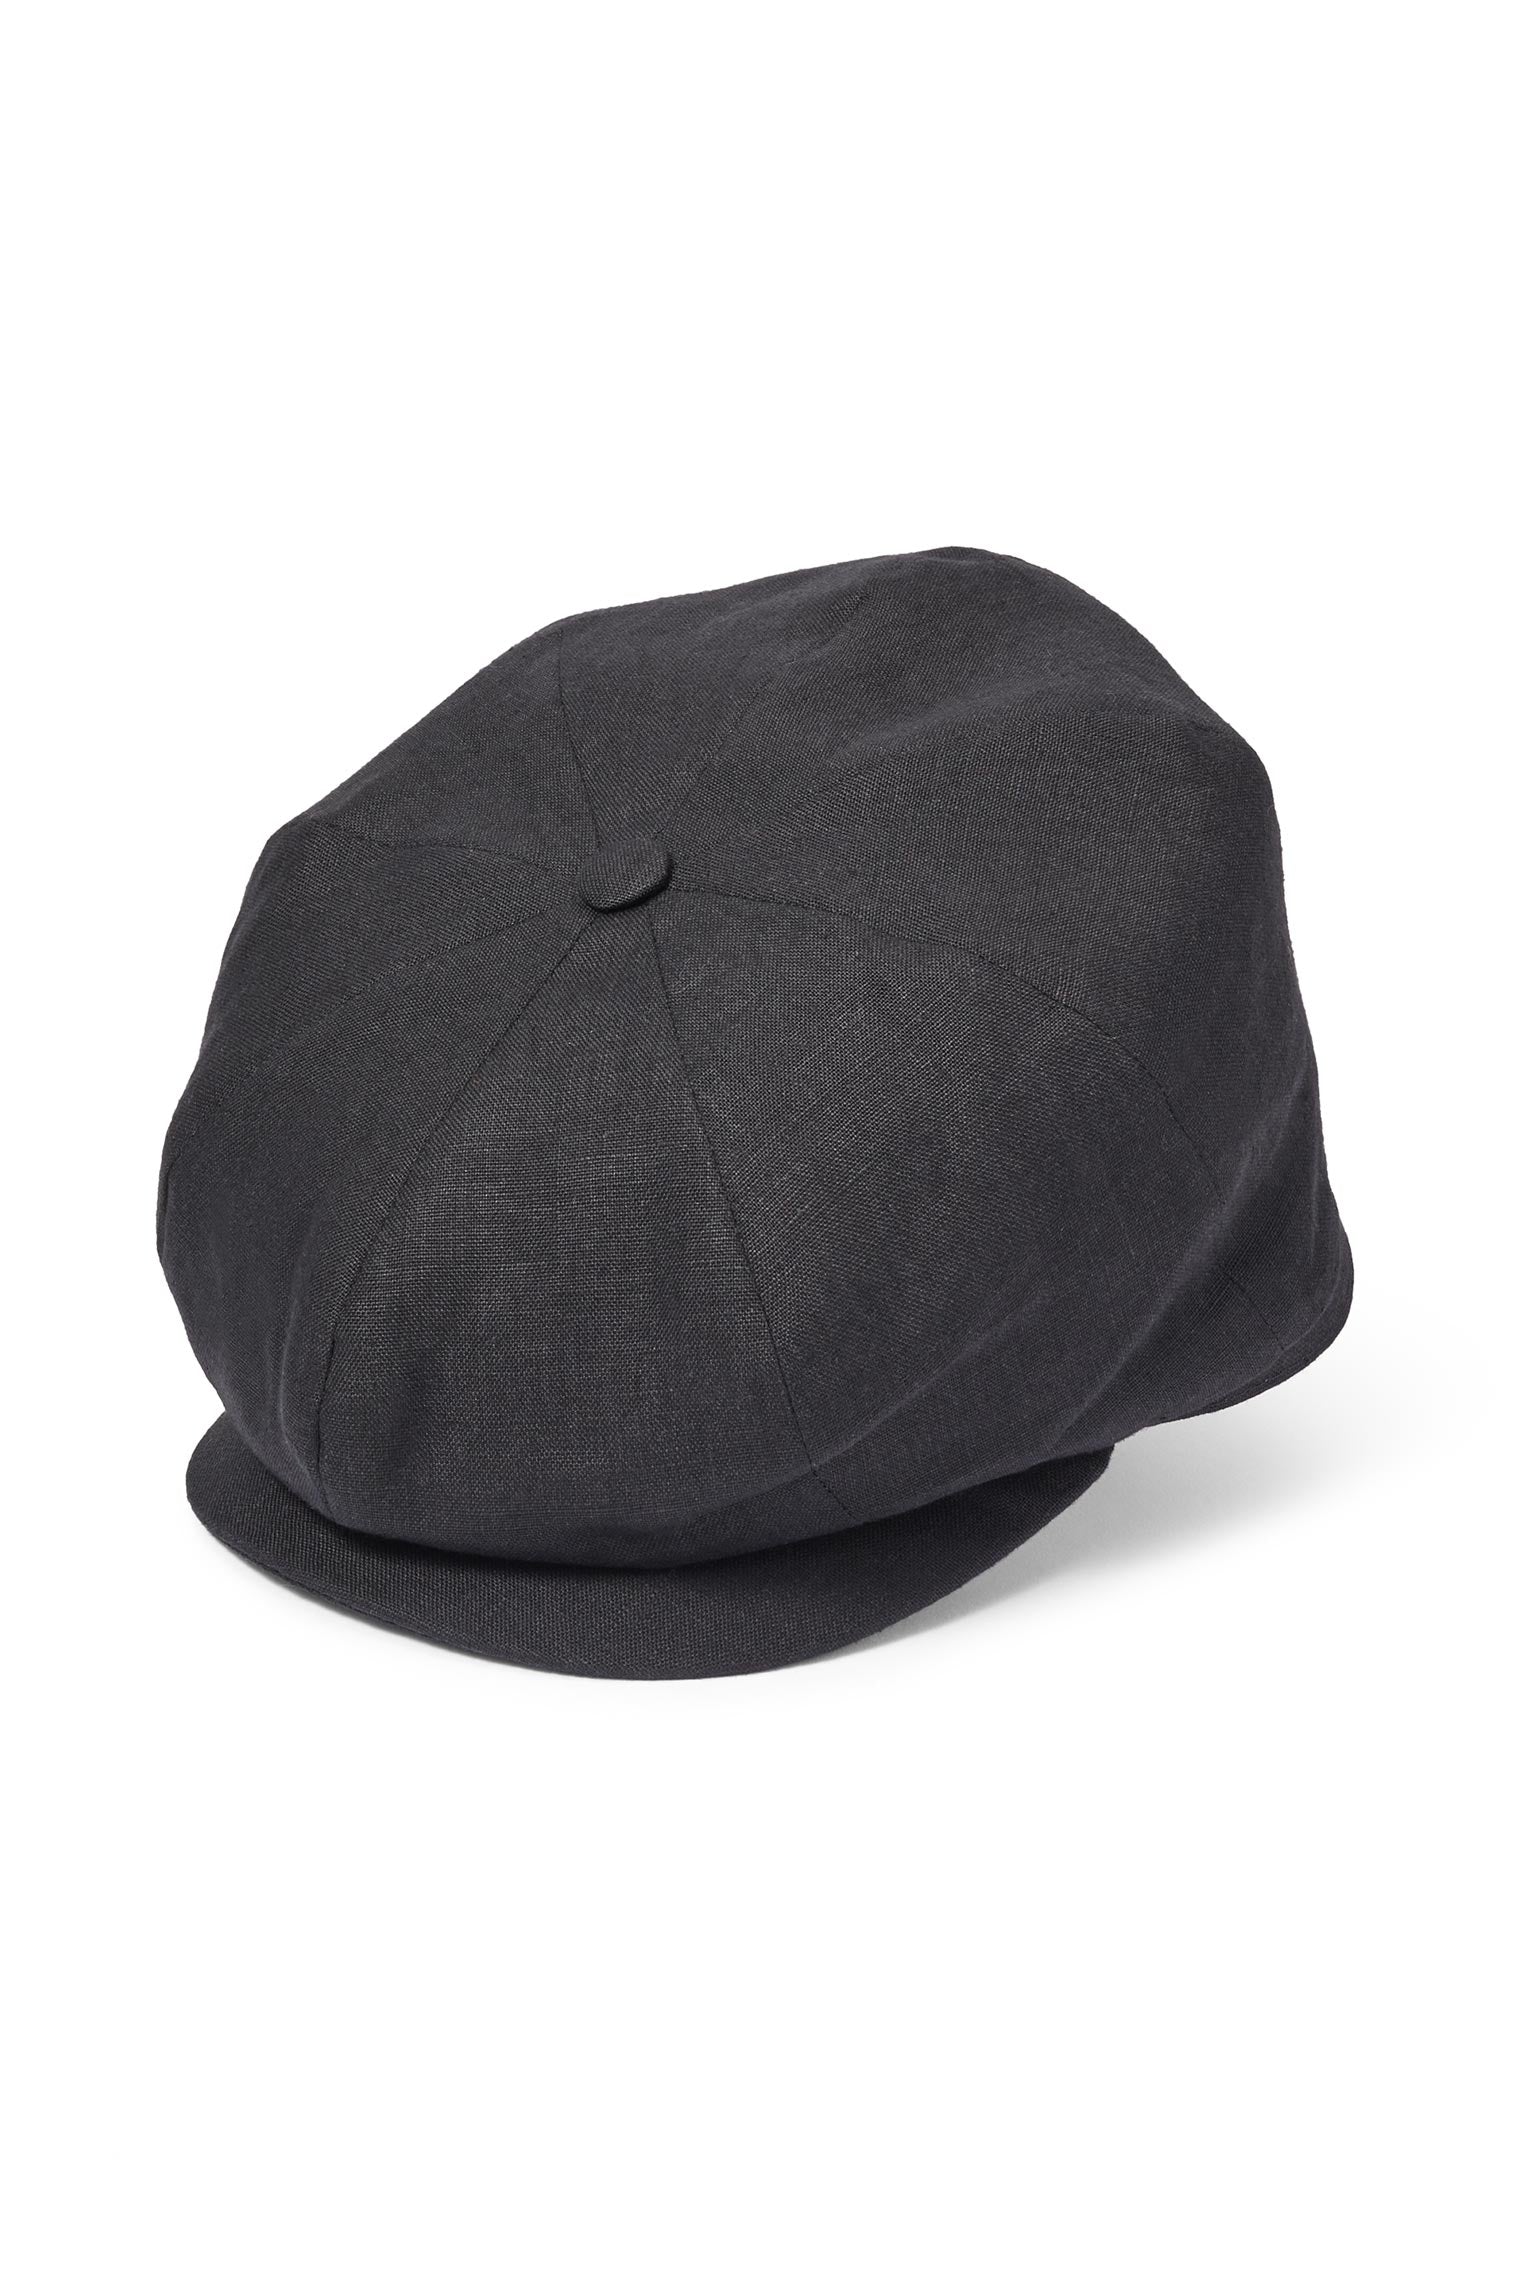 Tremelo Black Linen Bakerboy Cap - Men's Hats - Lock & Co. Hatters London UK